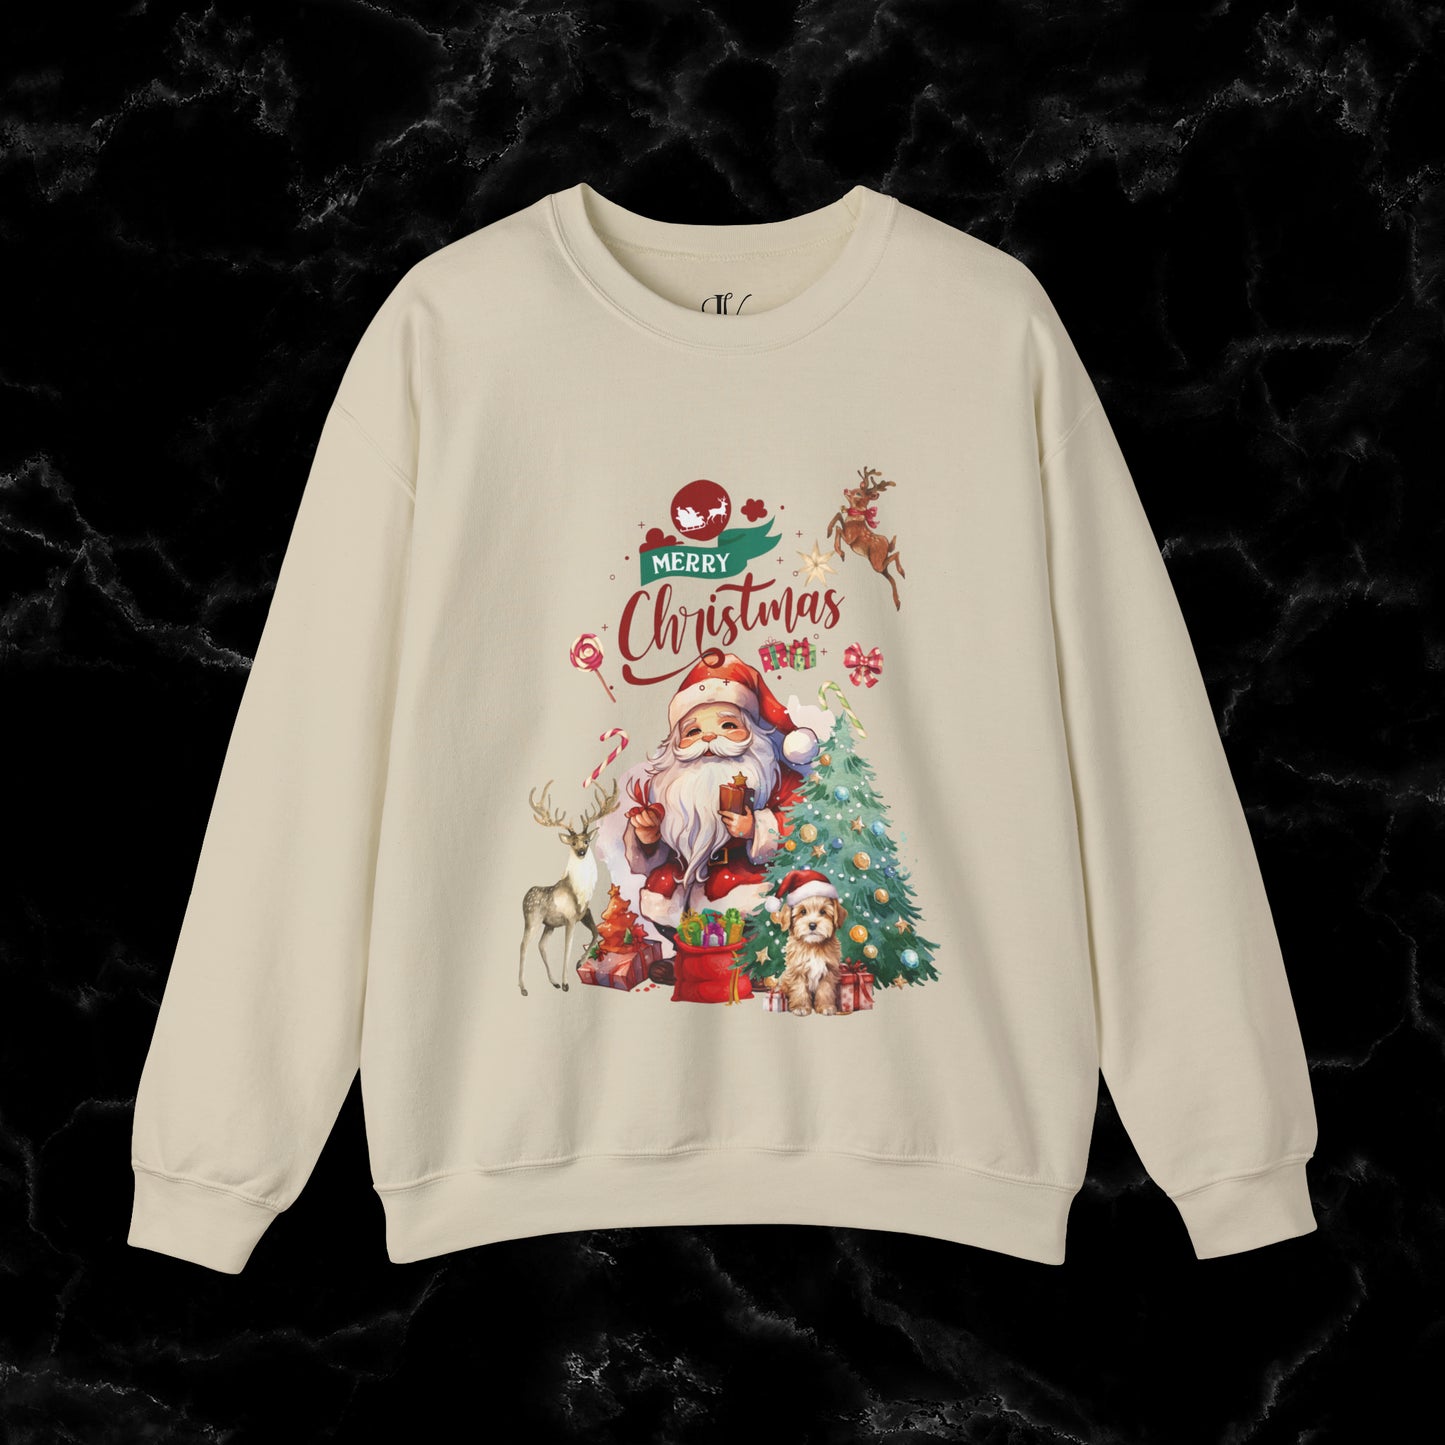 Merry Christmas Sweatshirt | Christmas Shirt - Matching Christmas Shirt - Santa Claus Merry Christmas Sweatshirt - Holiday Gift - Christmas Gift Sweatshirt S Sand 